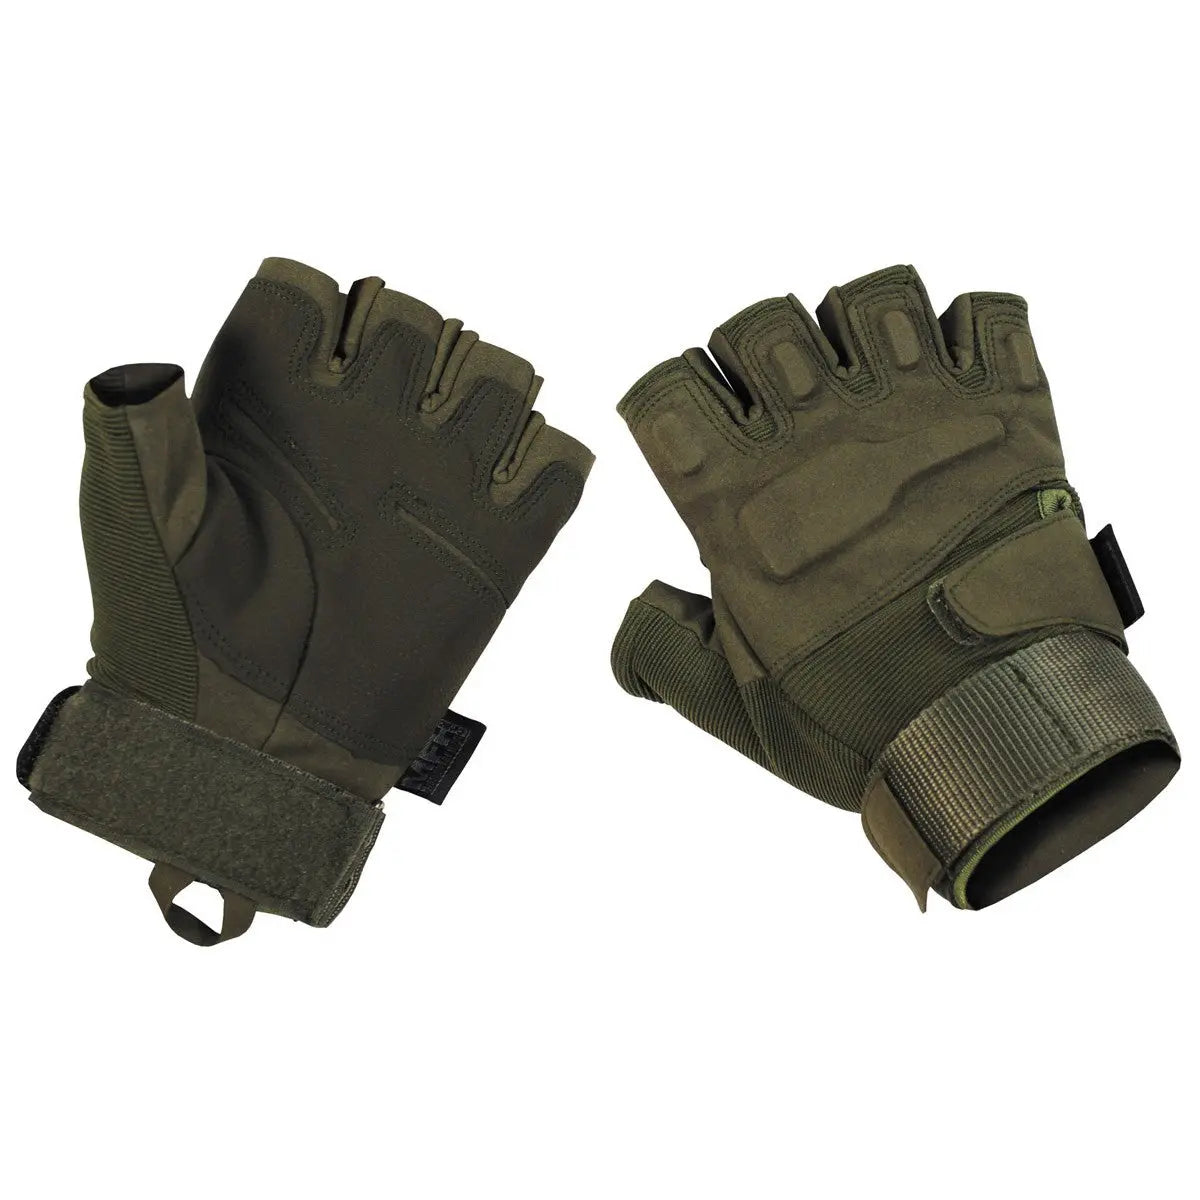 Tactical gloves, "Pro", half fingers, olive